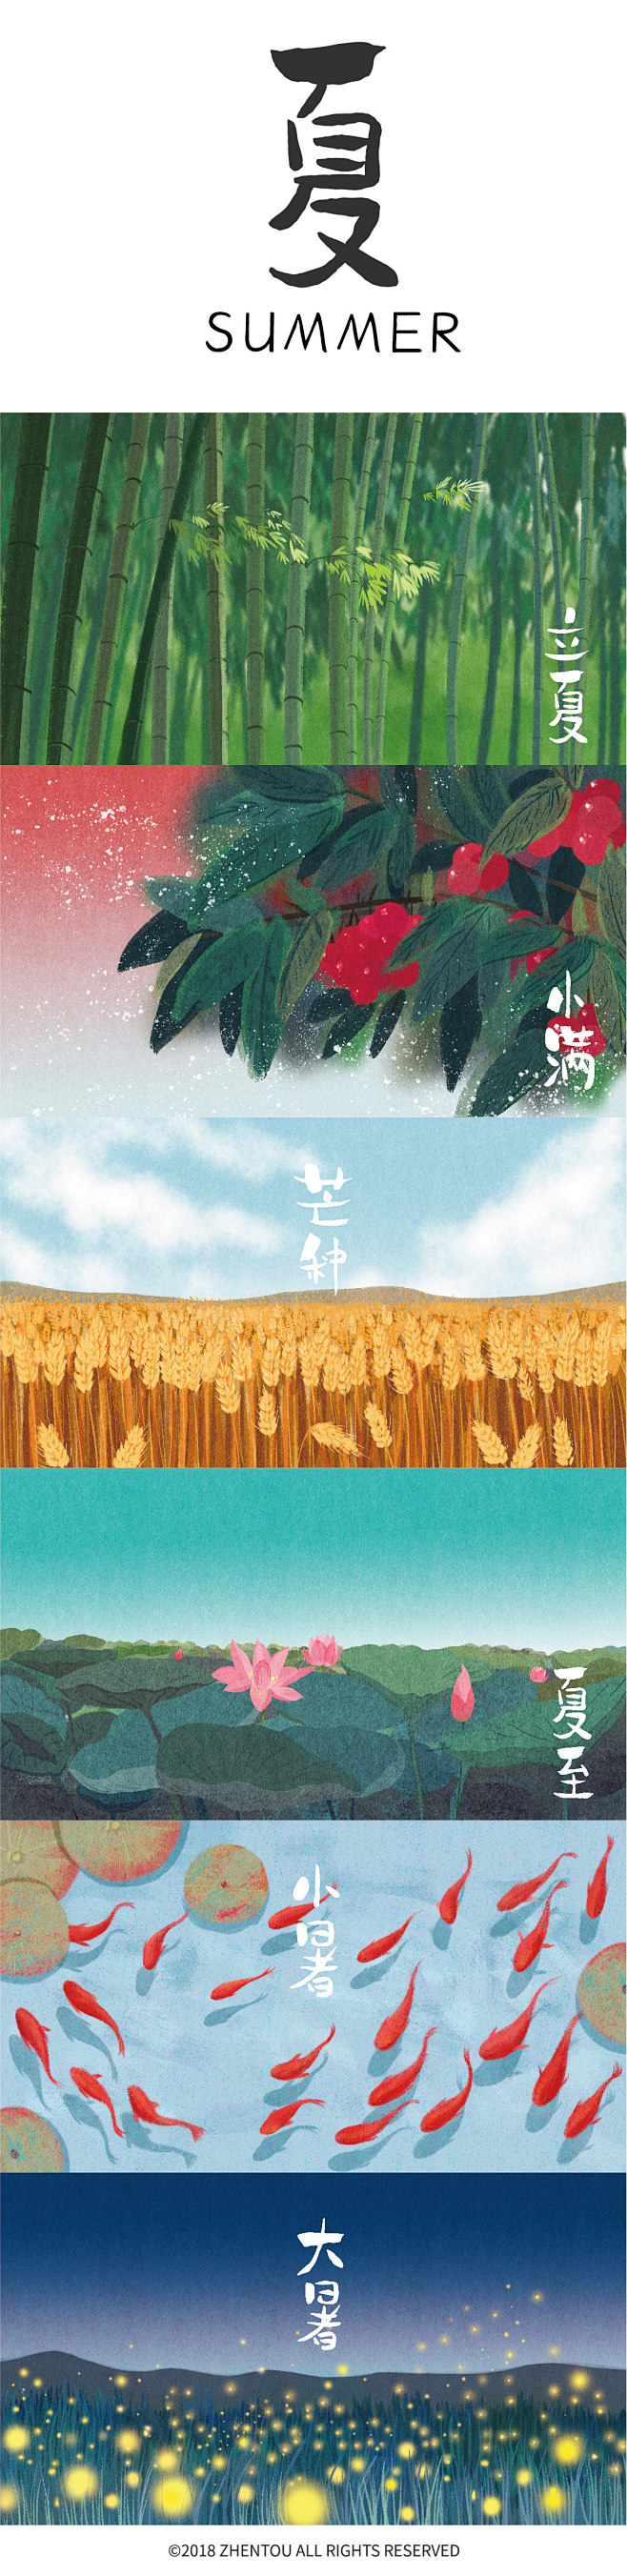 二十四节气-中国风景清新手绘插画及字体设...